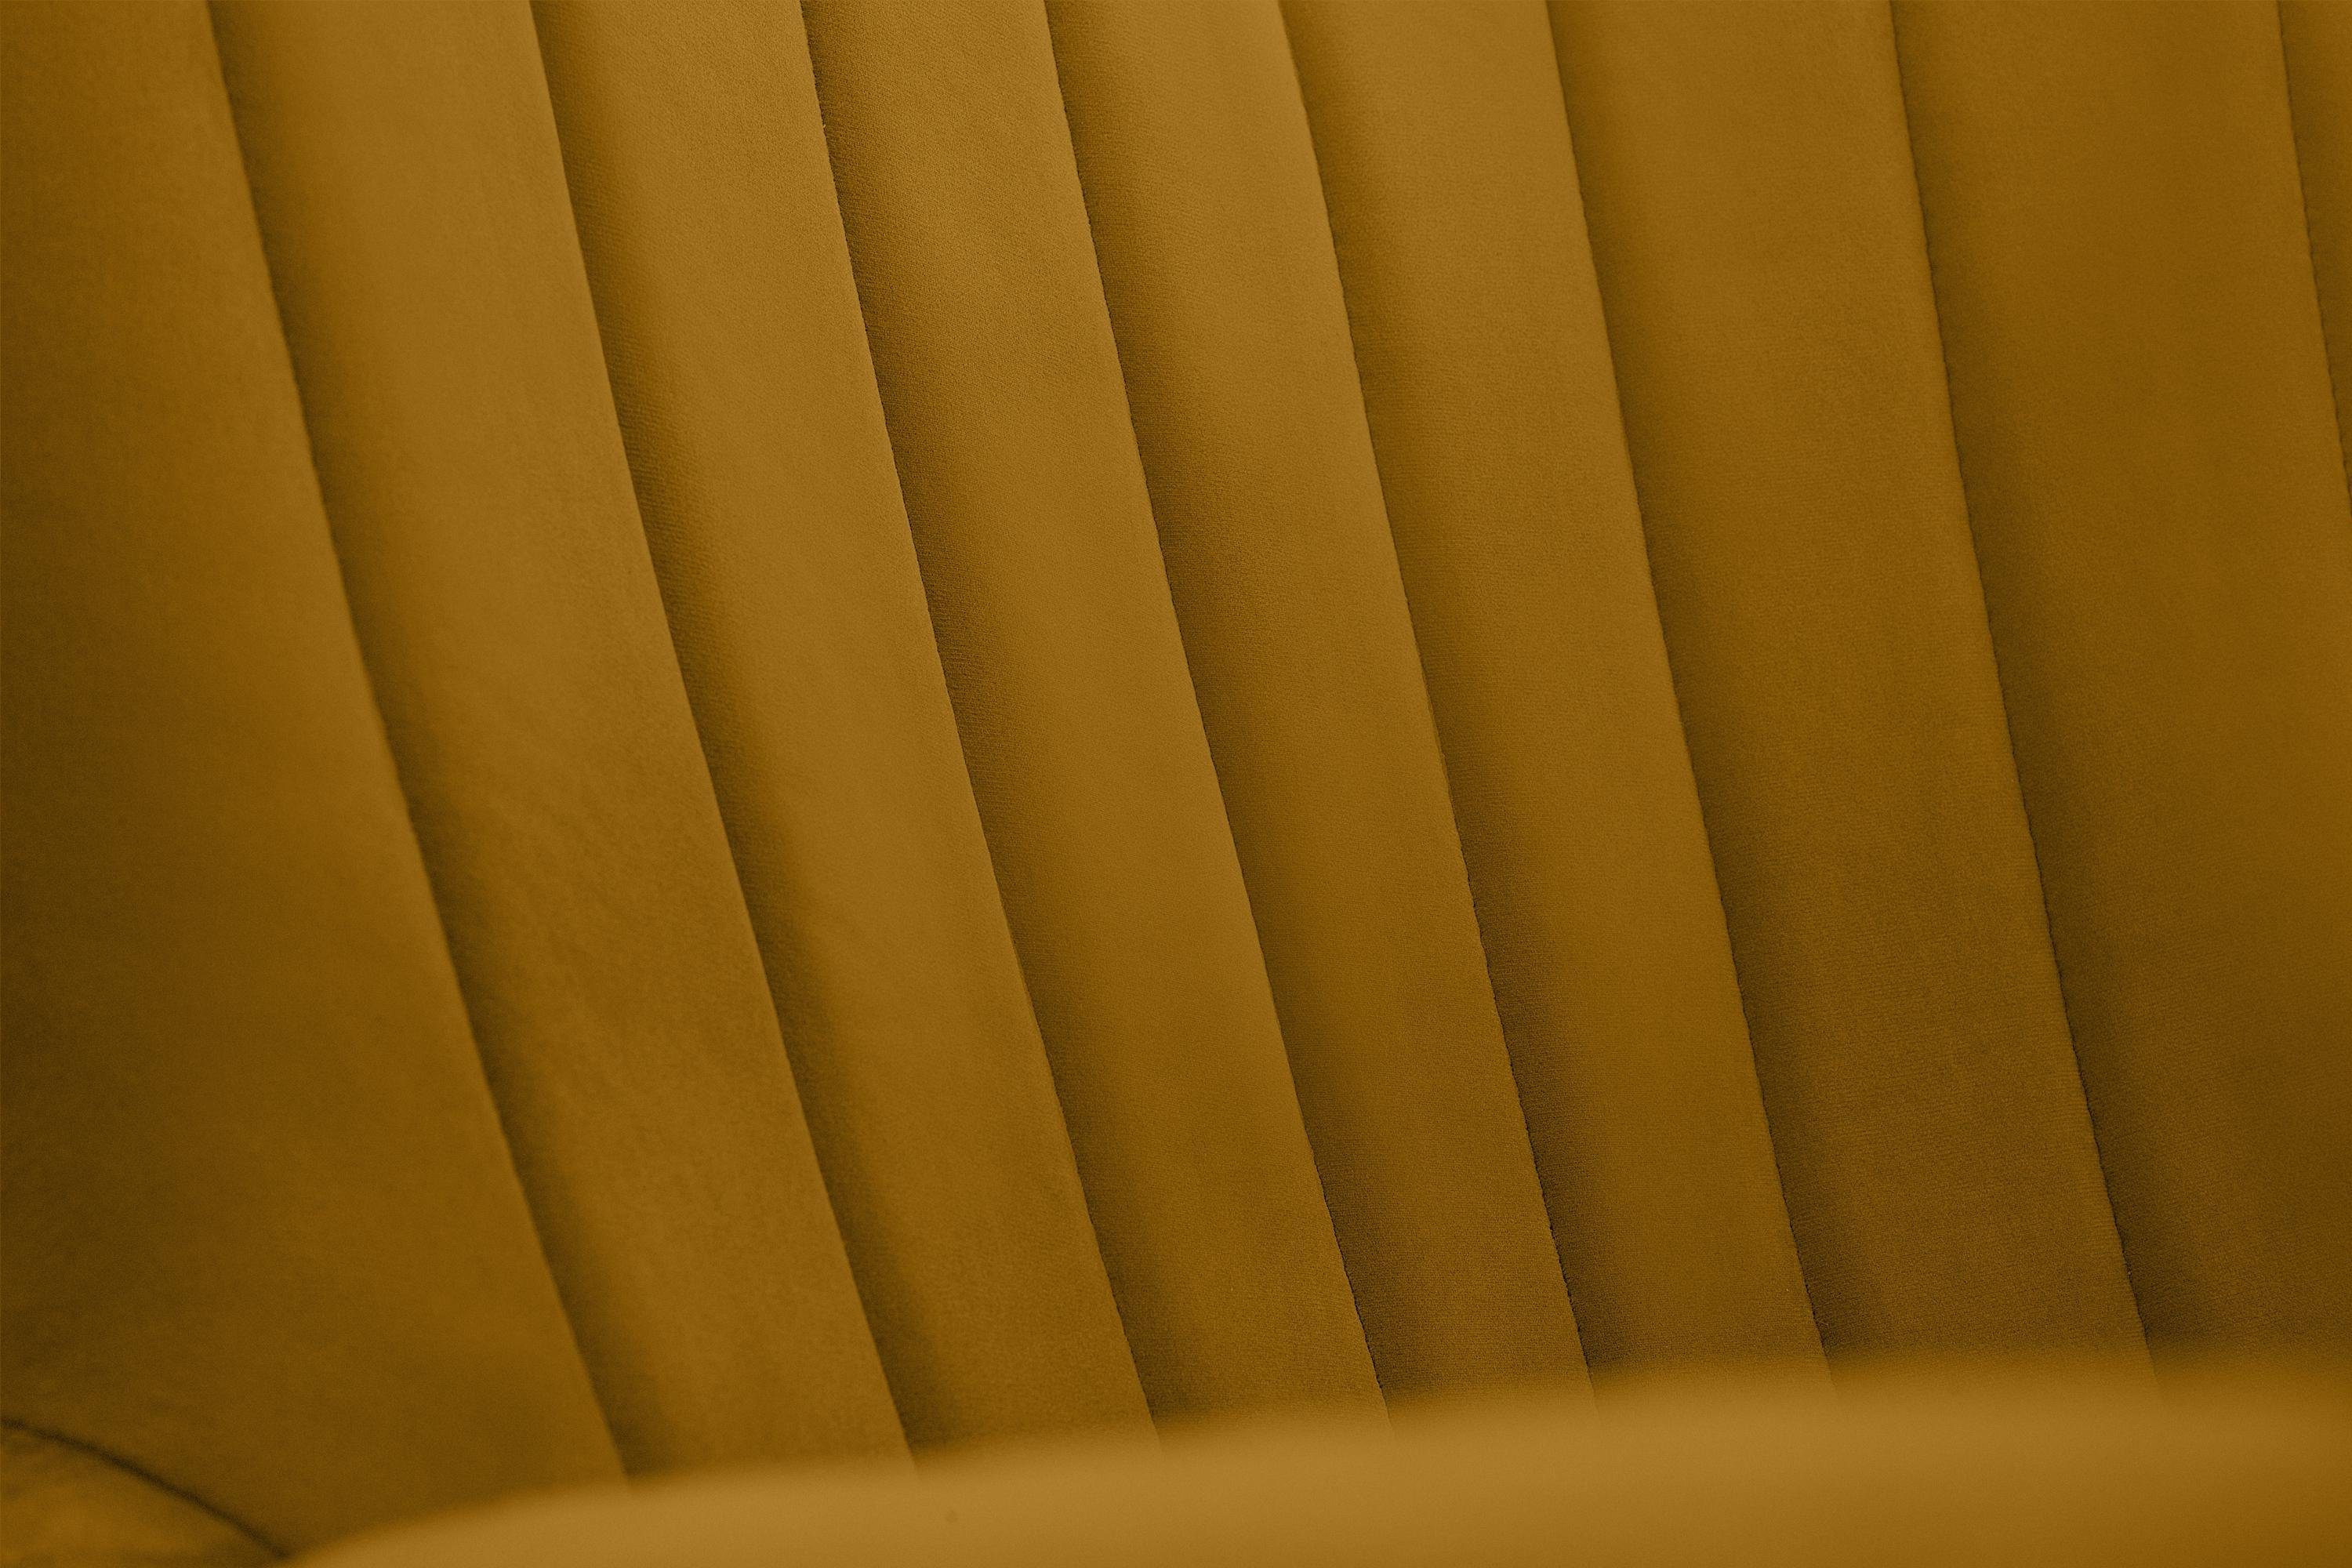 Konsimo Ohrensessel GADI, Velourstoff, PUR-Schaum lackierte Schwarz gelb im Holzbeine gelb | Sitz